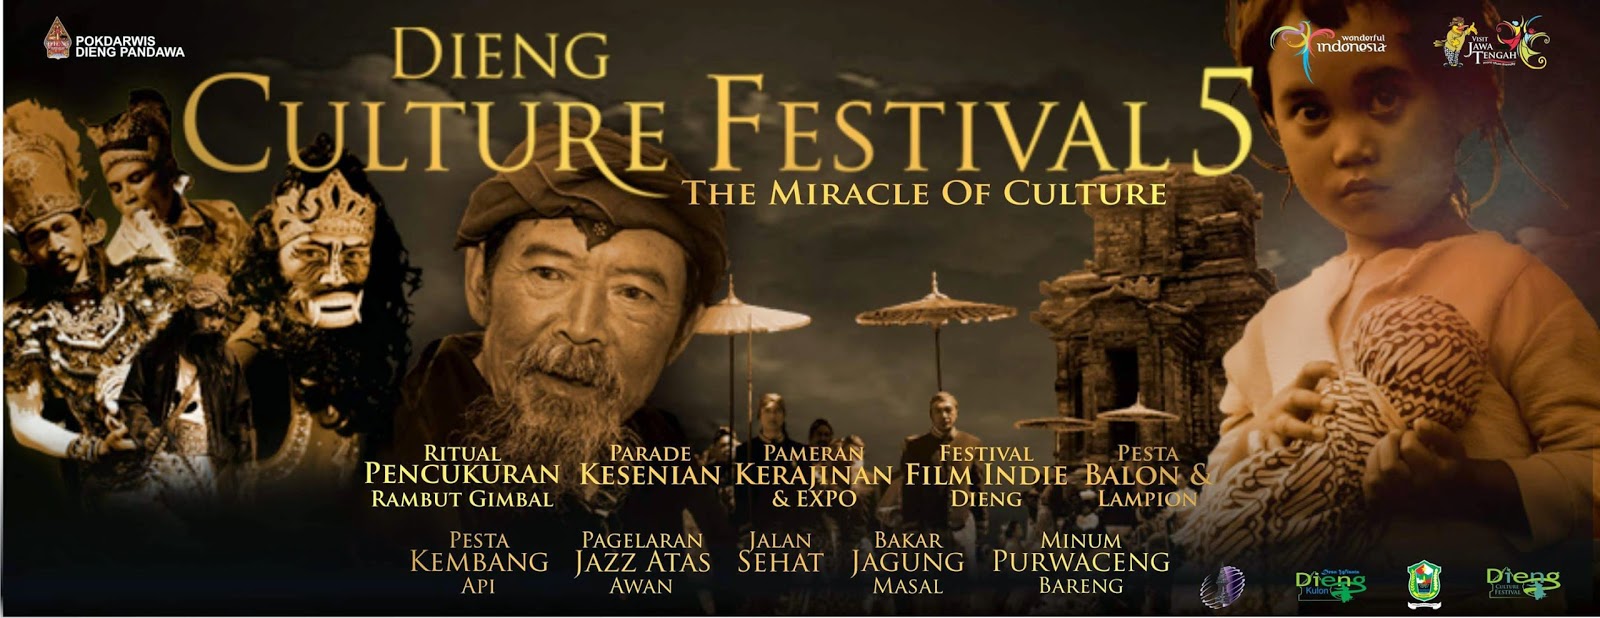 dieng-culture-festival-5-2014